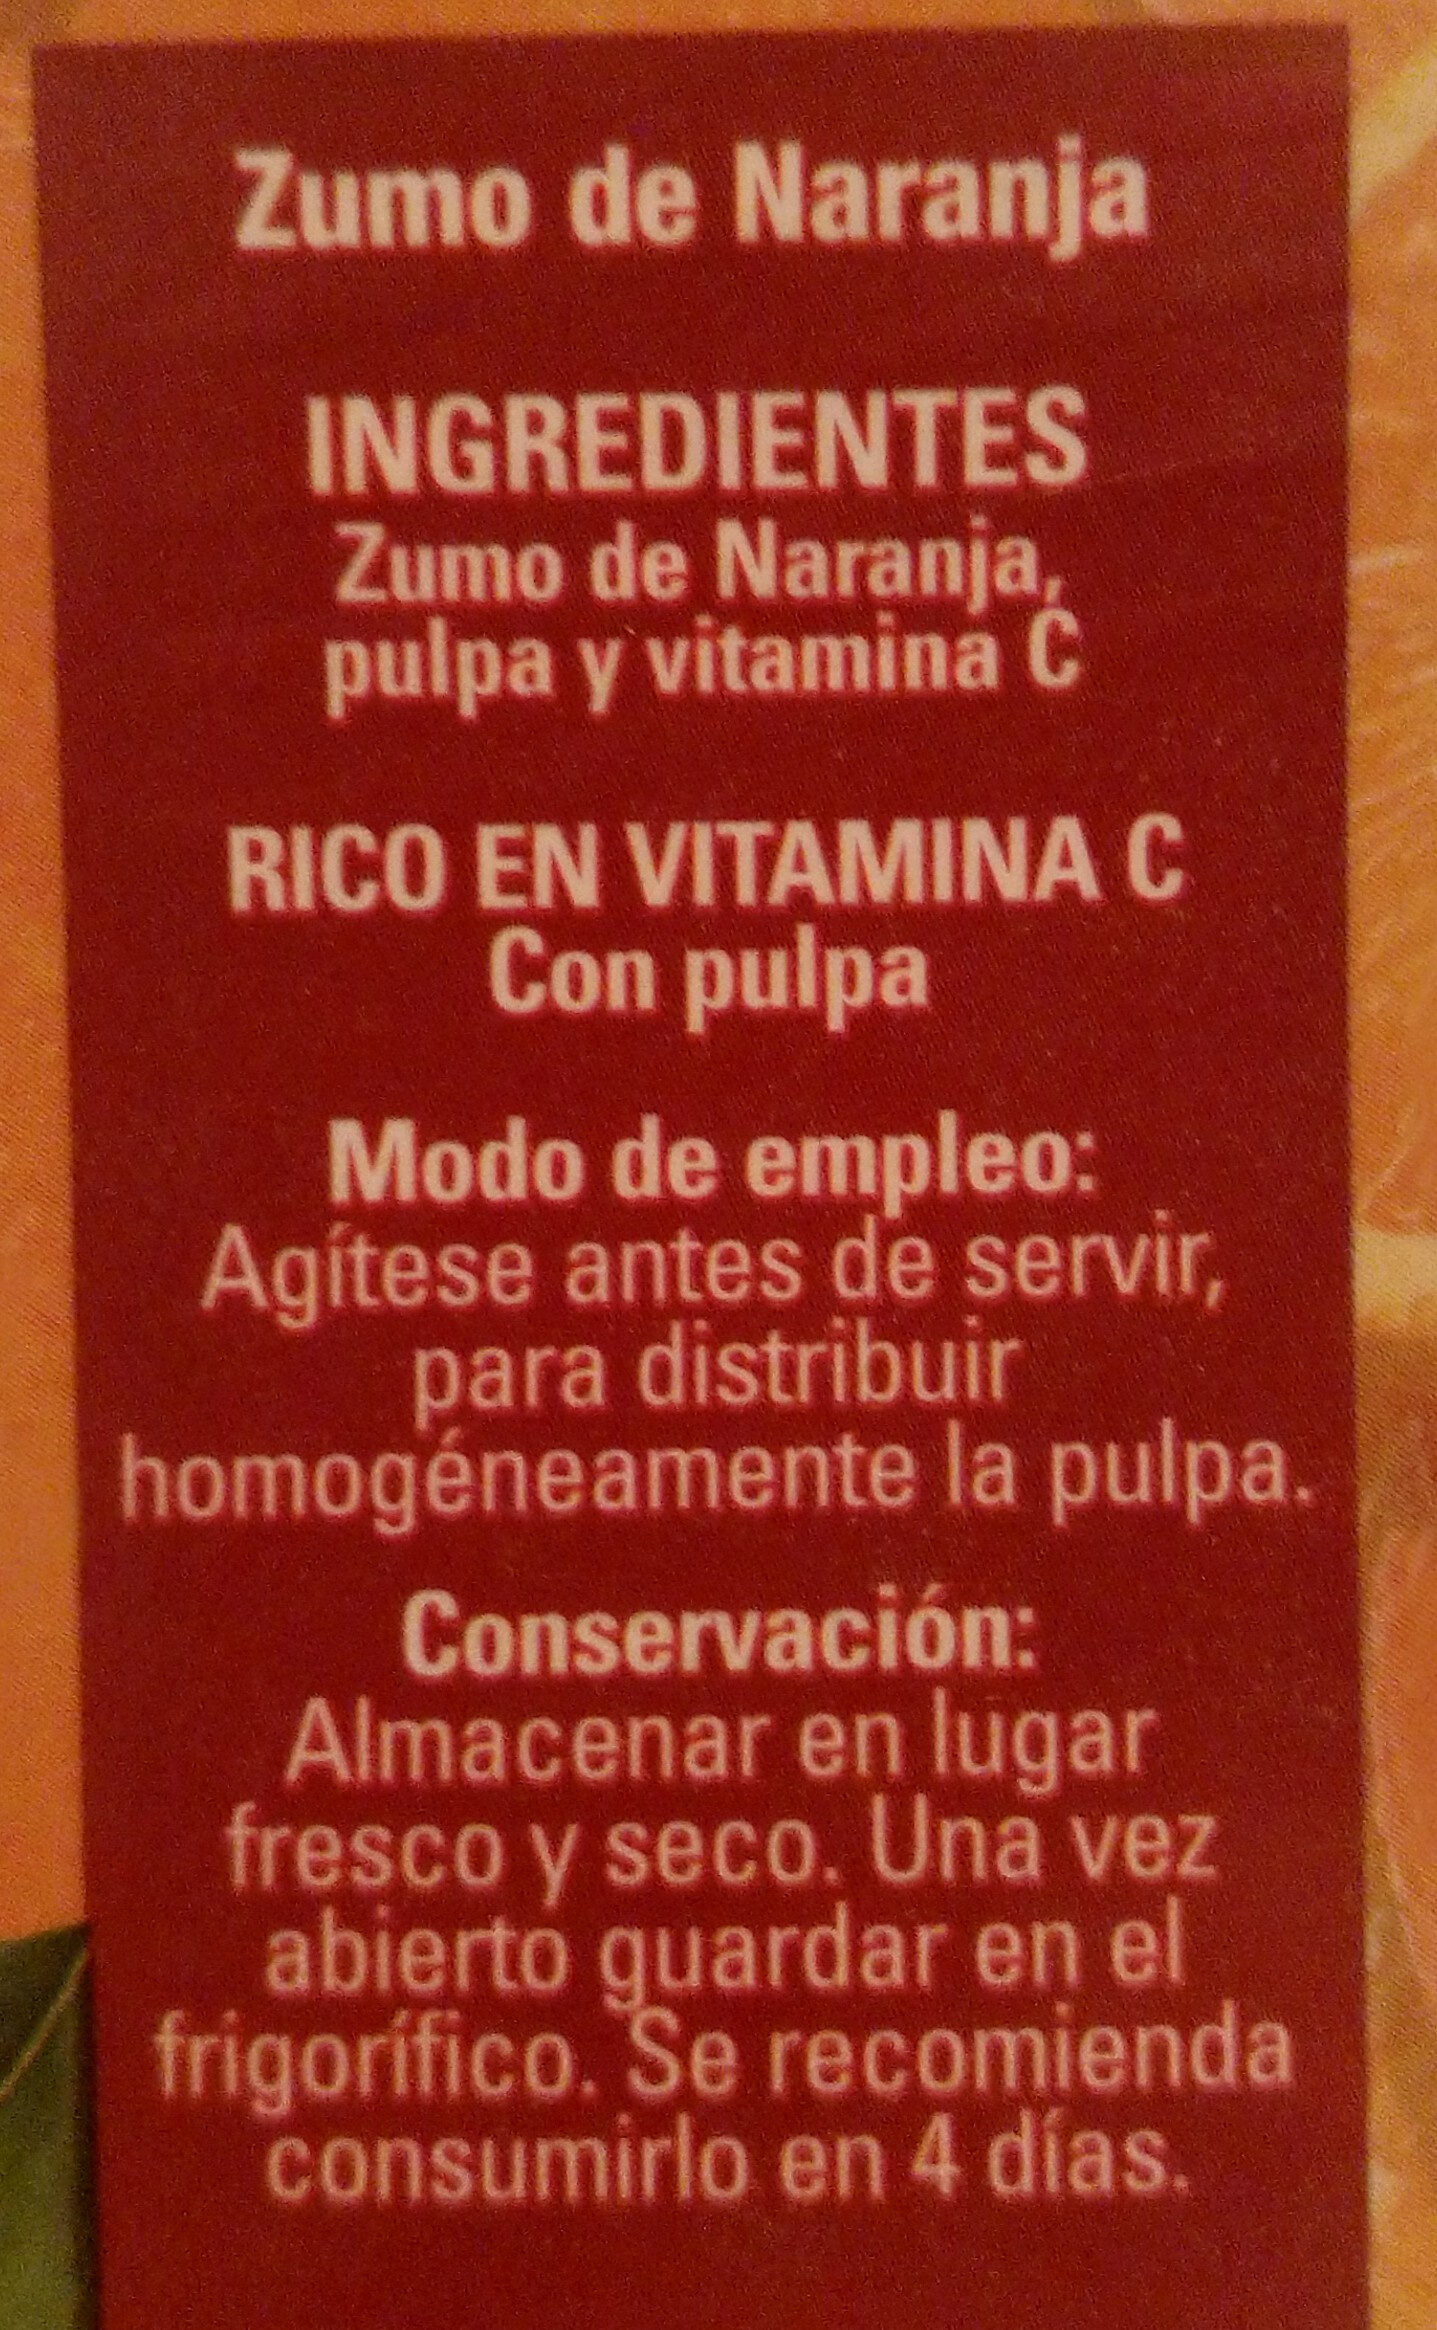 Zumo pura naranja con pulpa - Ingredients - es